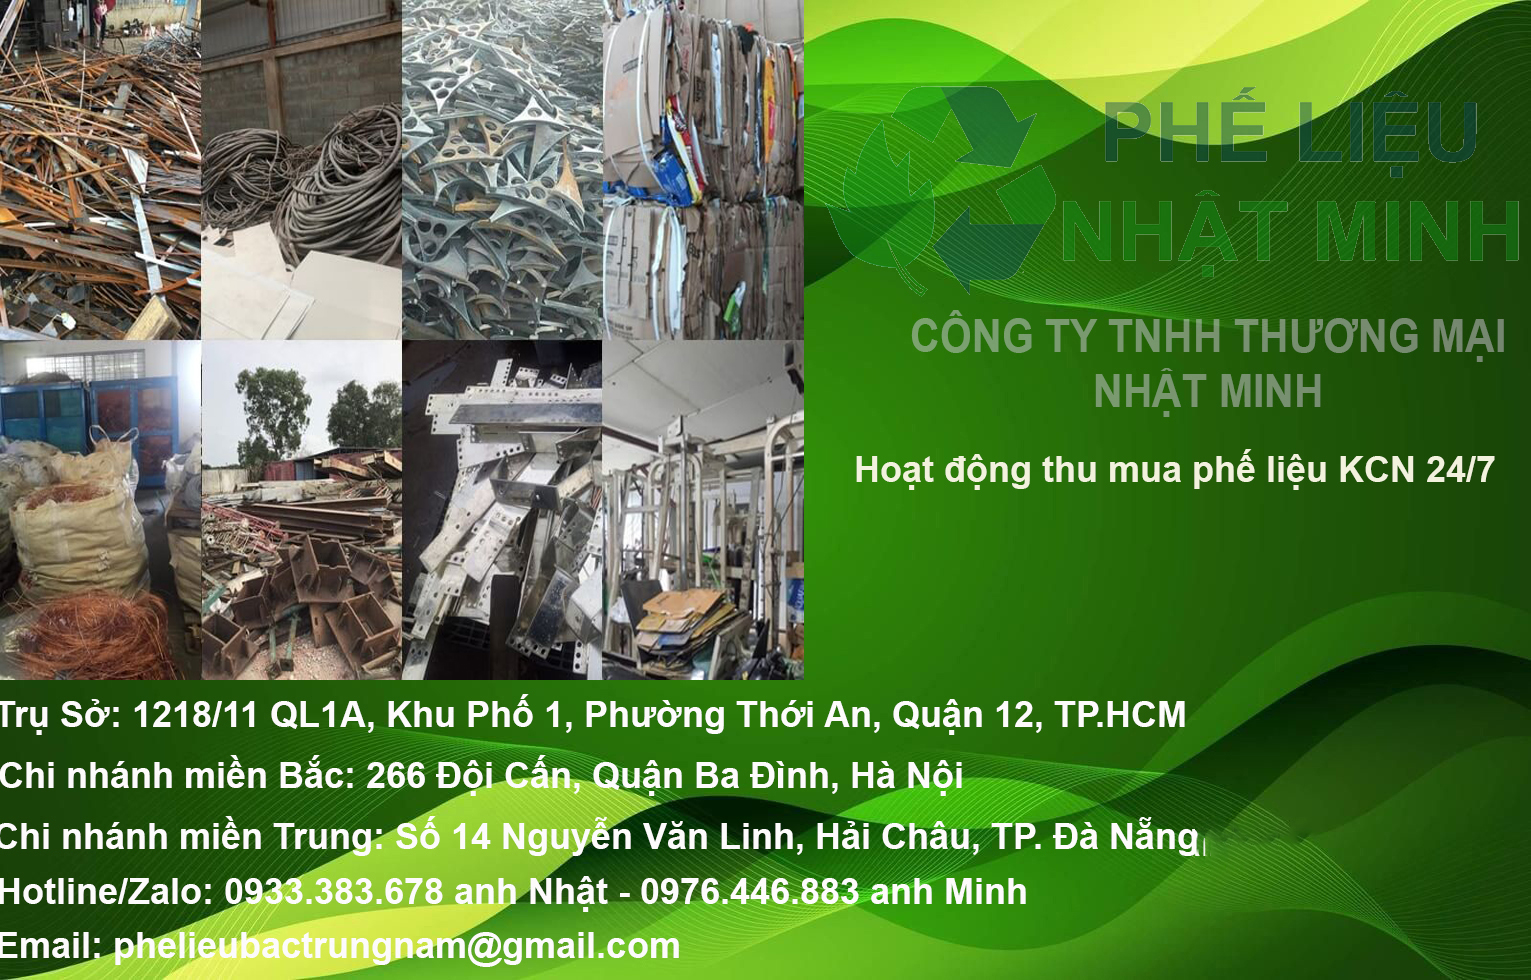 Dai Ly Phe Lieu Nhat Minh Company 2